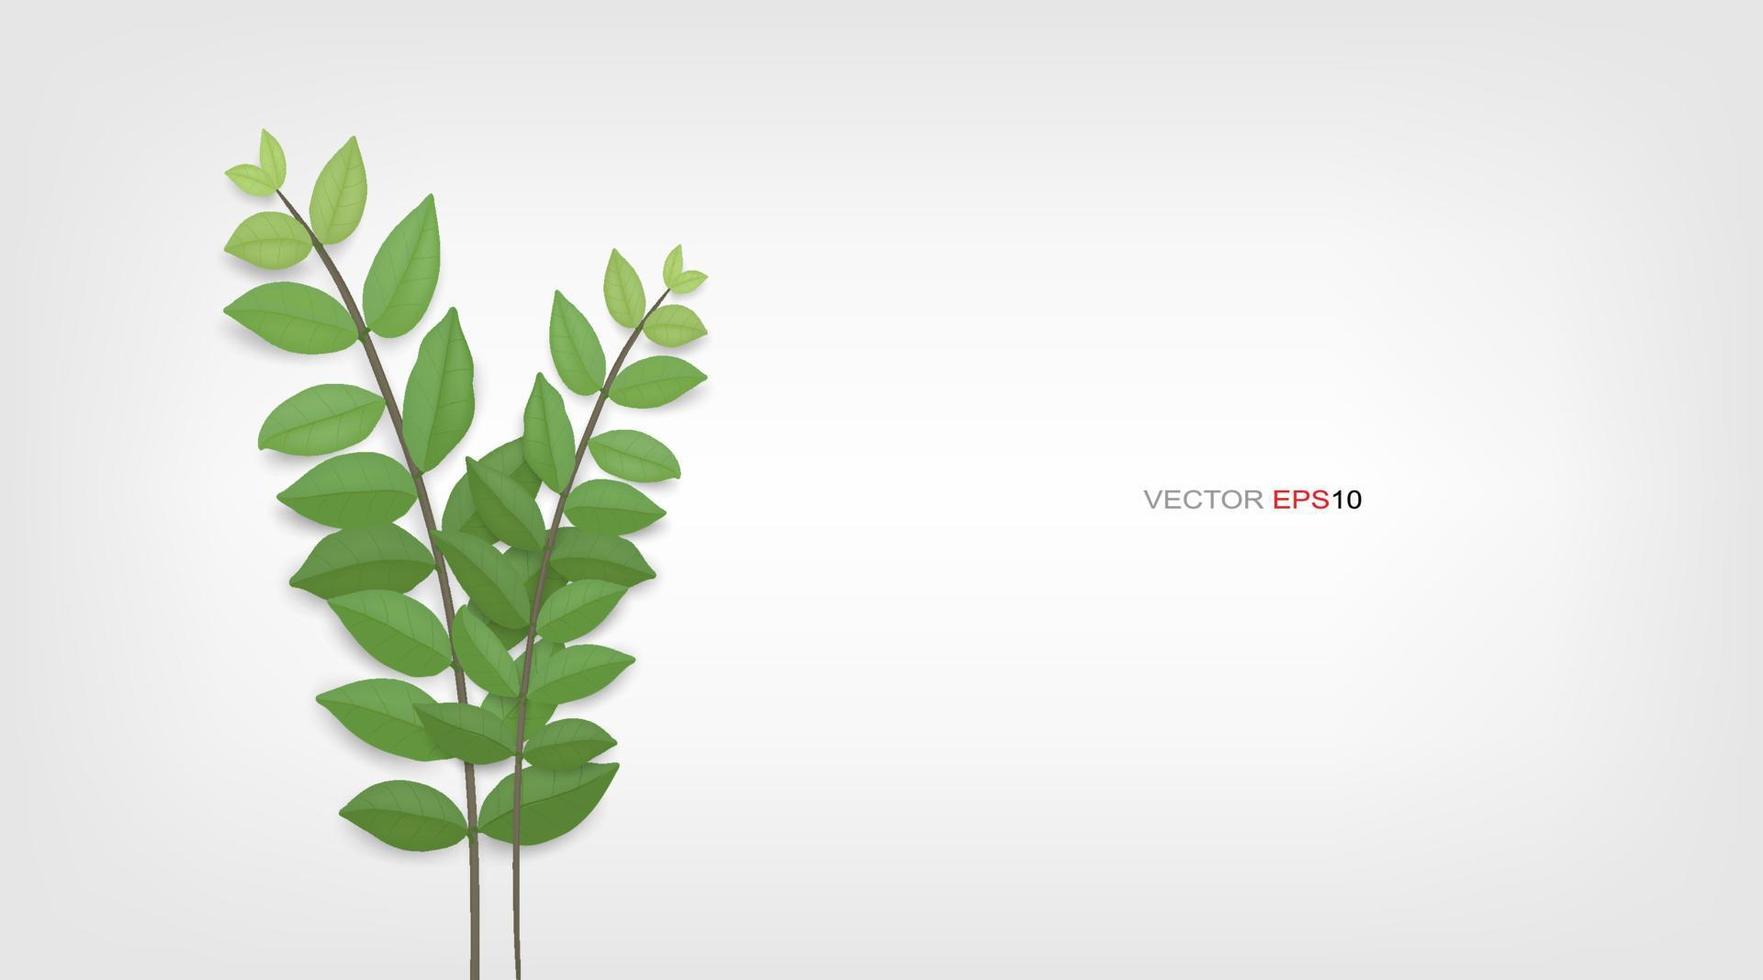 hojas verdes y ramas de árboles. Fondo abstracto natural para publicidad de productos. ilustración vectorial. vector